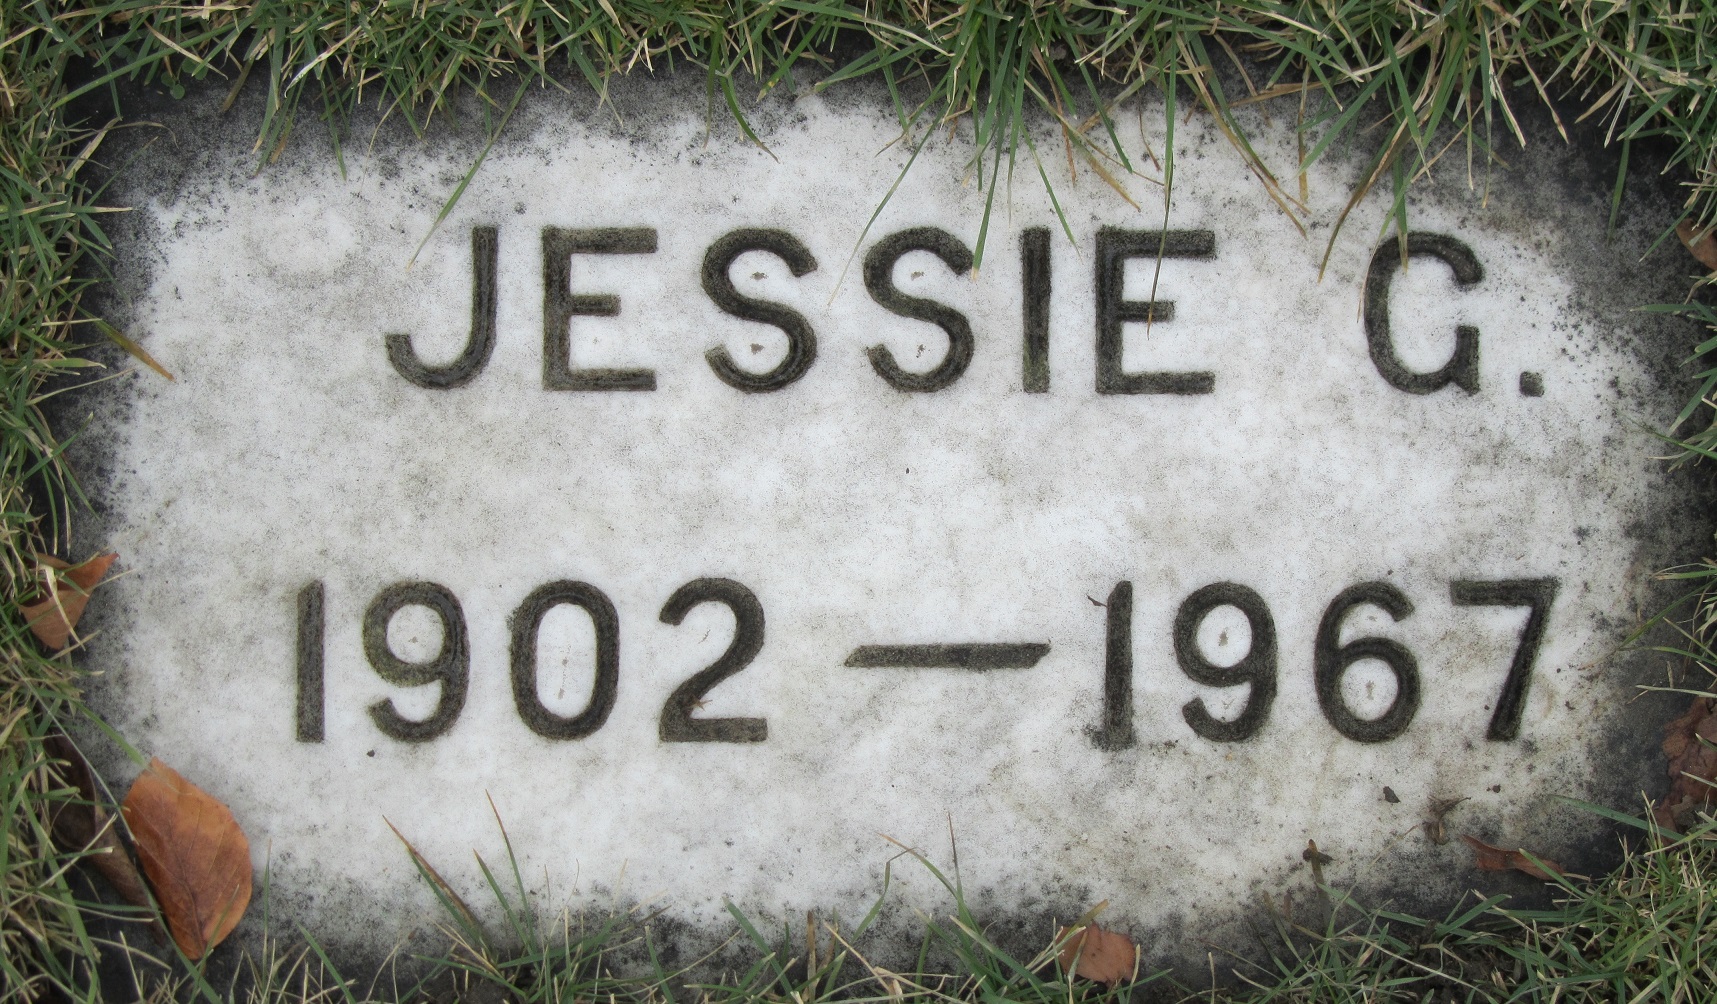 Jessie G EVANS 1902-1967